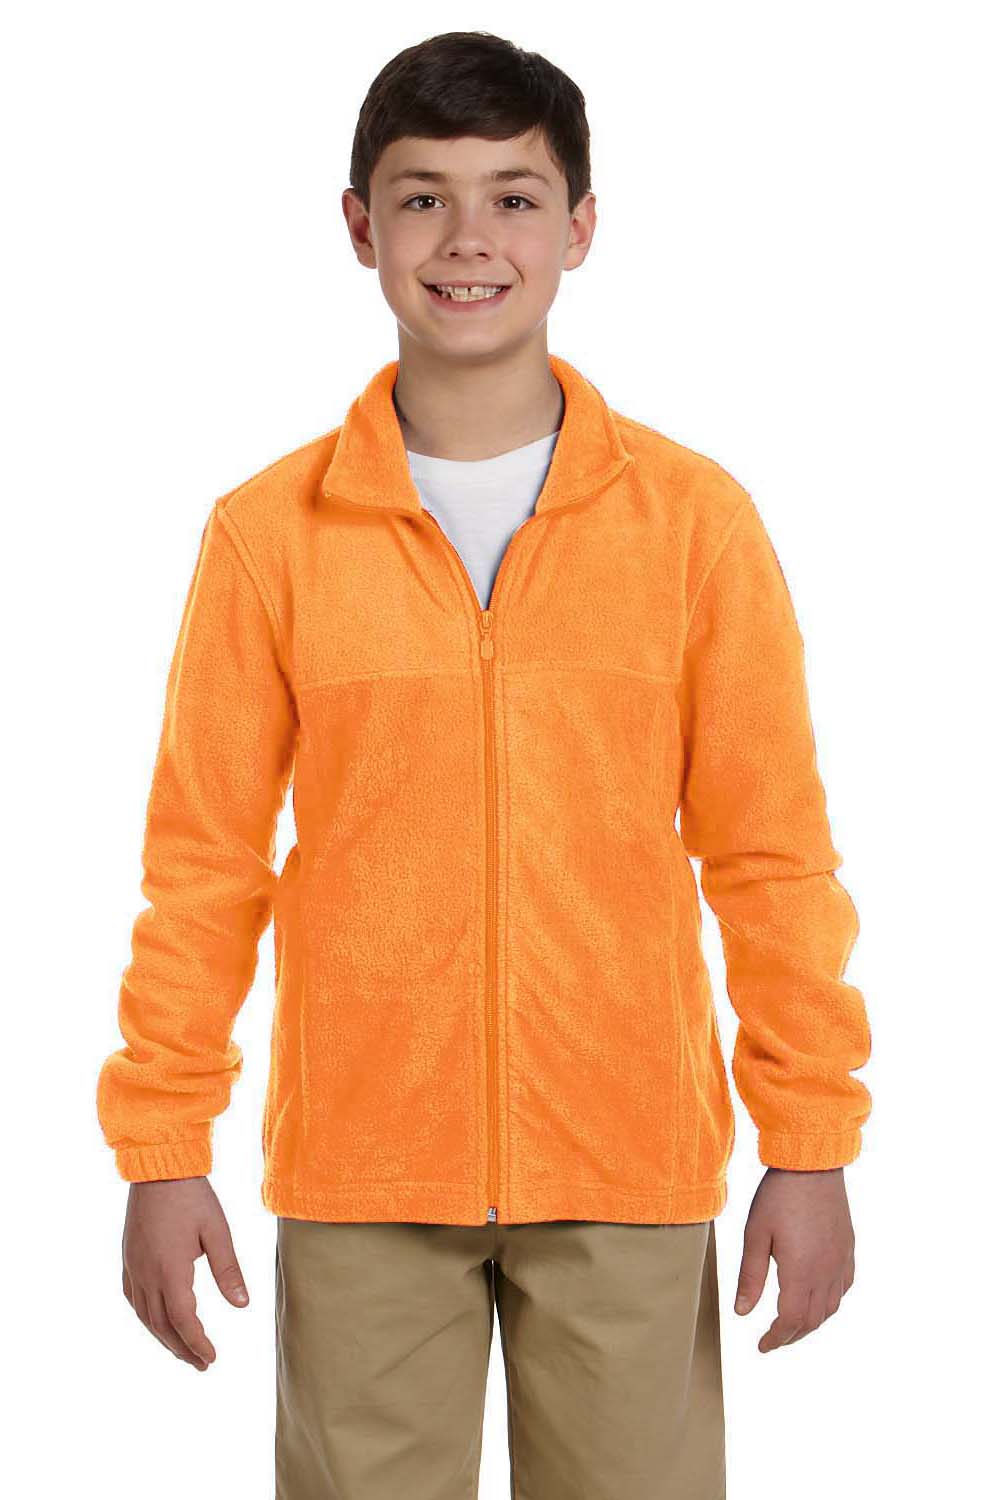 Harriton M990Y Youth Full Zip Fleece Jacket Safety Orange Front